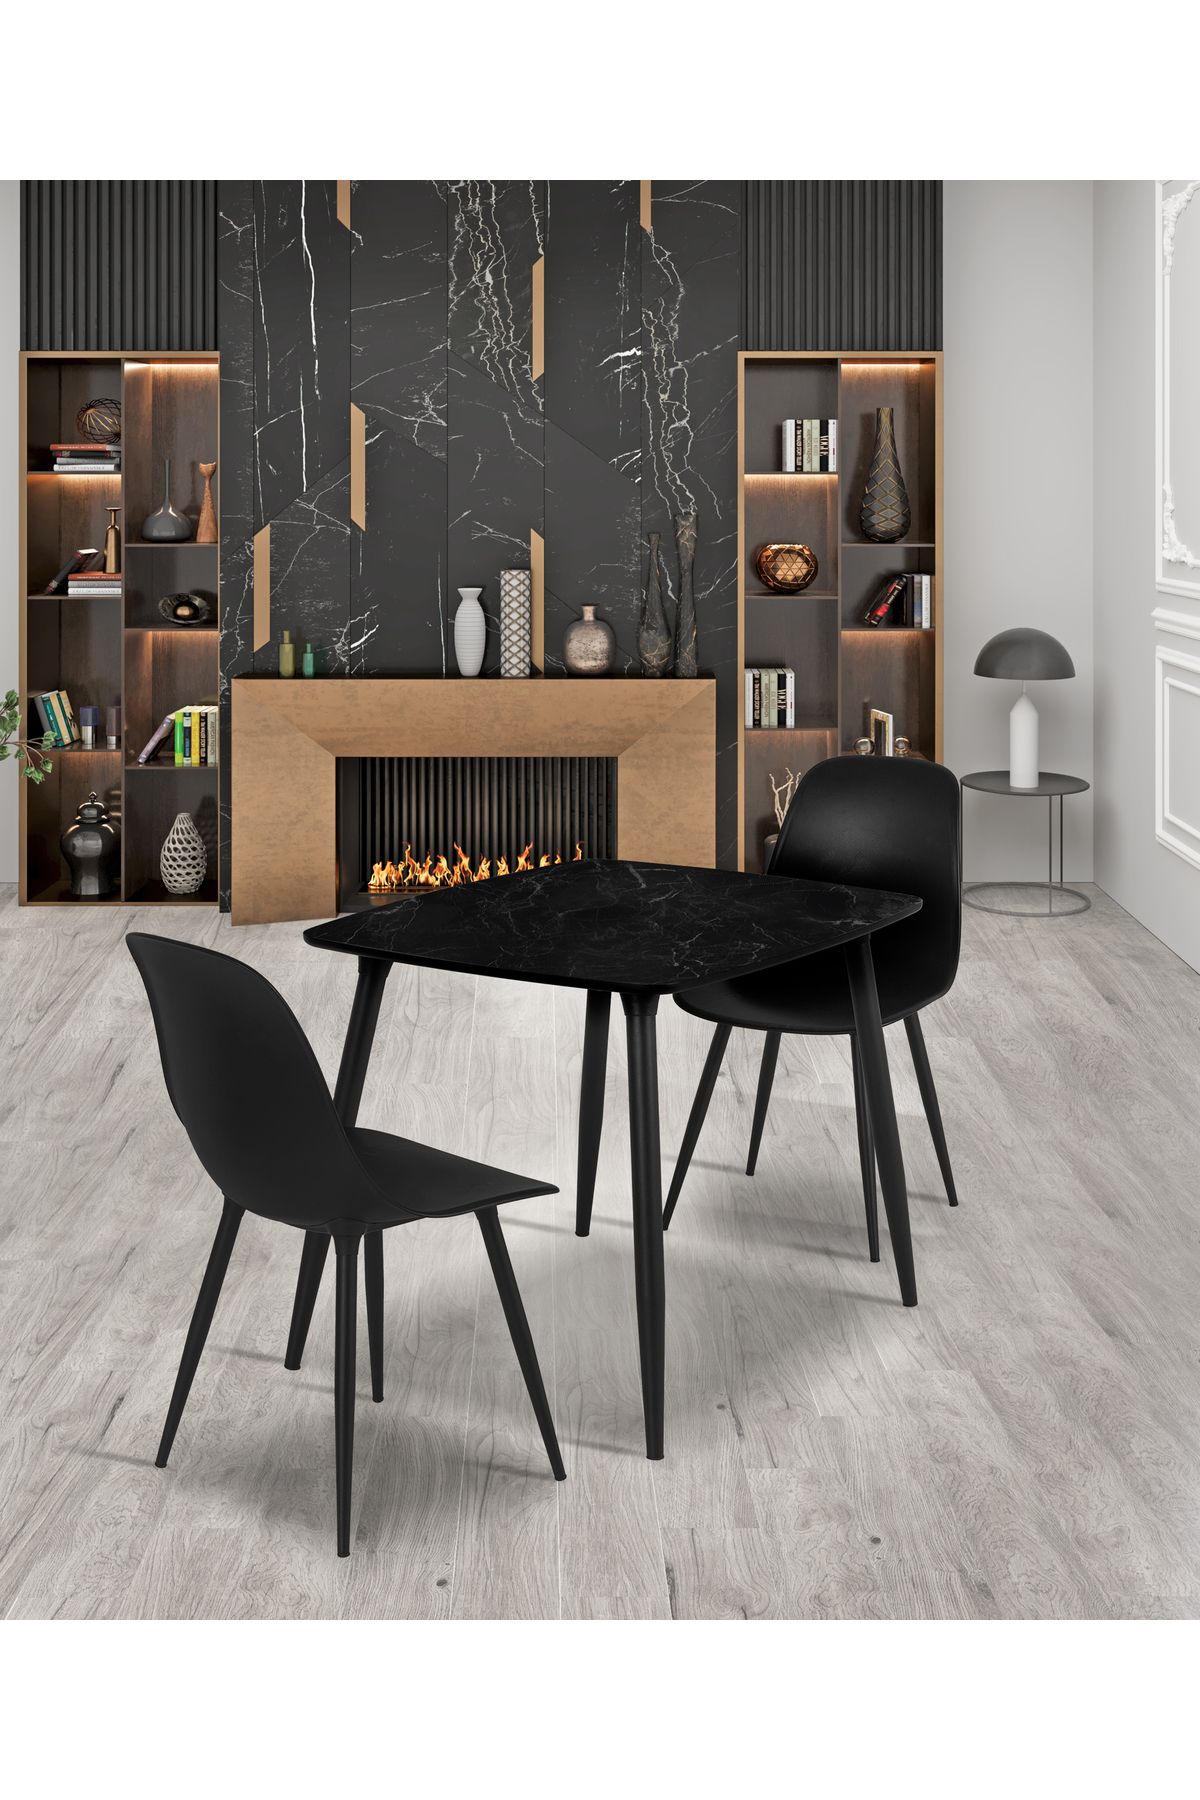 Estelia Yemek Masası Mutfak Masası 70x90 Cm Metal Ayaklı Siyah Masa, 2 Adet Abant Metal Ayaklı Sandalye